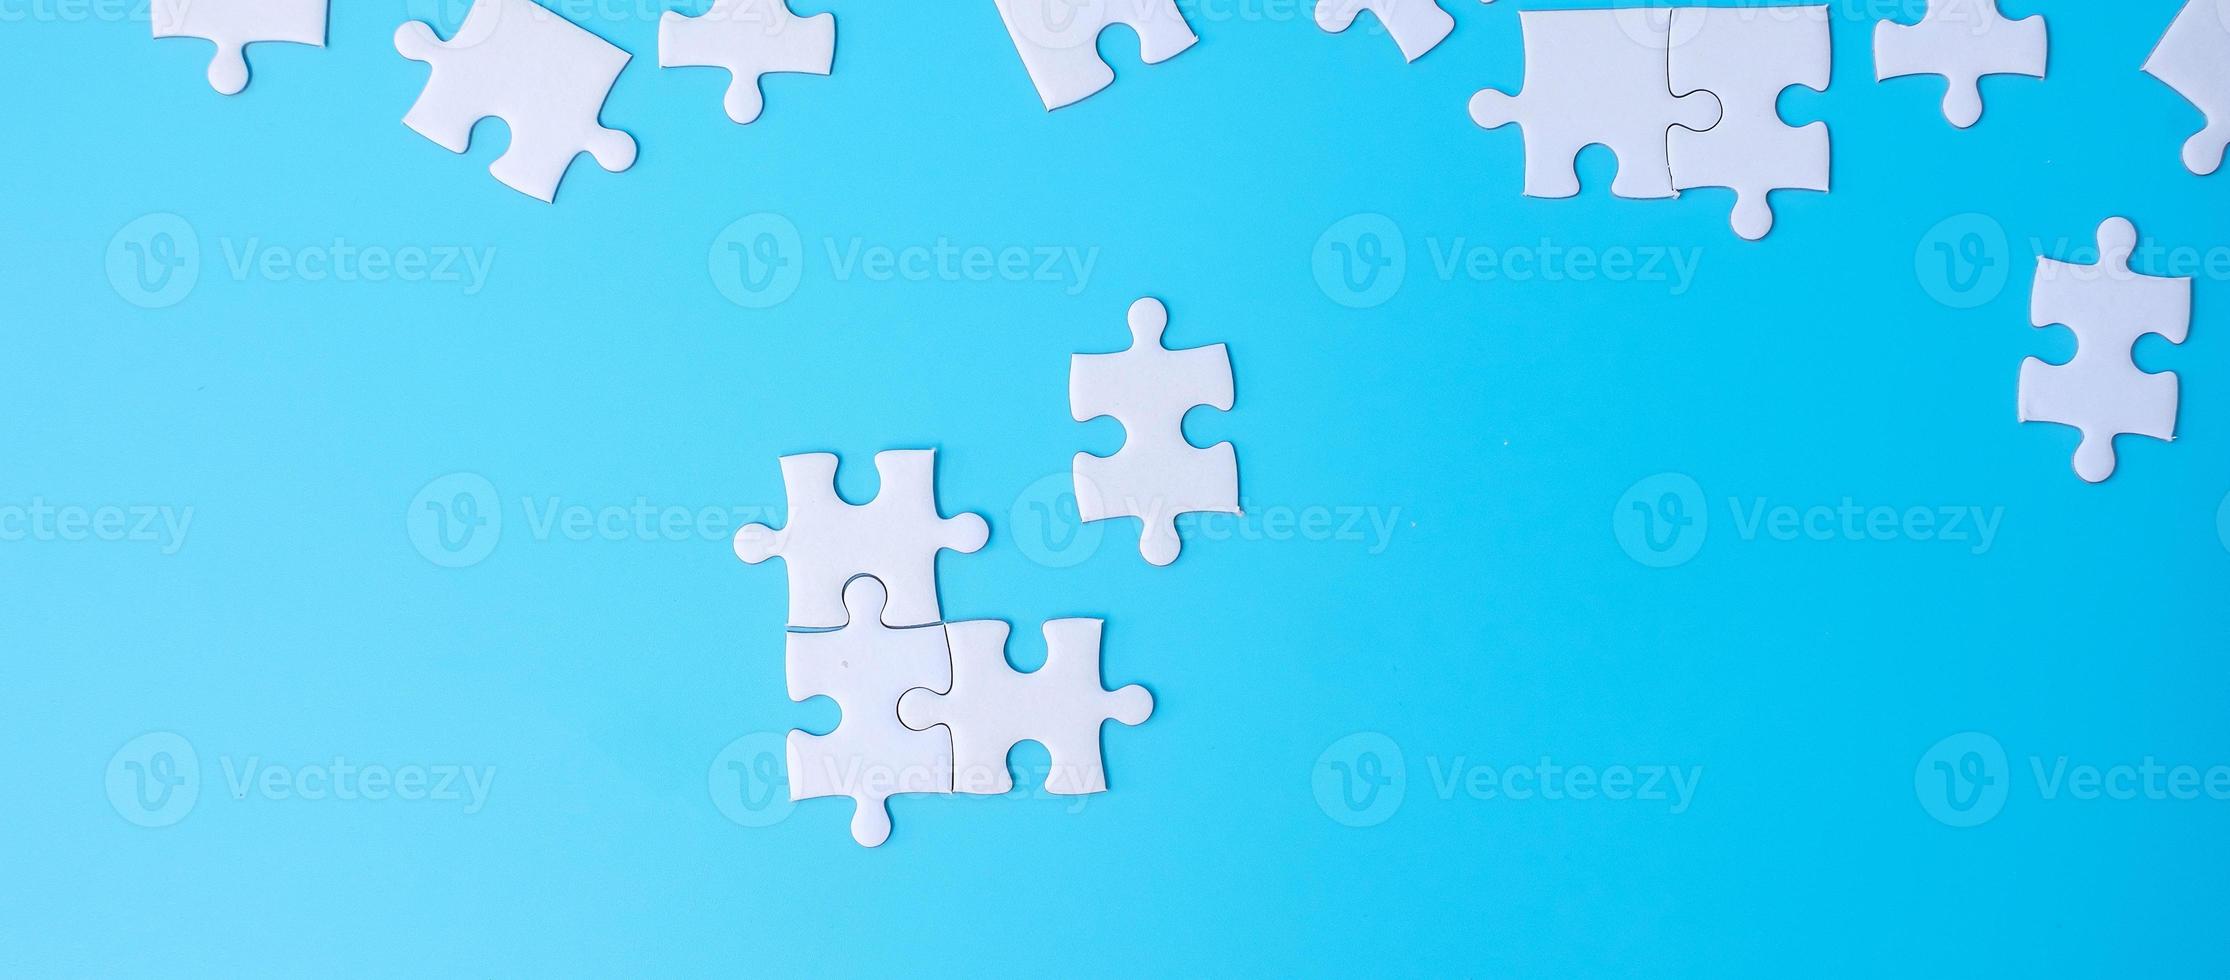 grupo de piezas de rompecabezas blancas sobre fondo azul. concepto de soluciones, misión, éxito, objetivos, cooperación, asociación, estrategia y día del rompecabezas foto